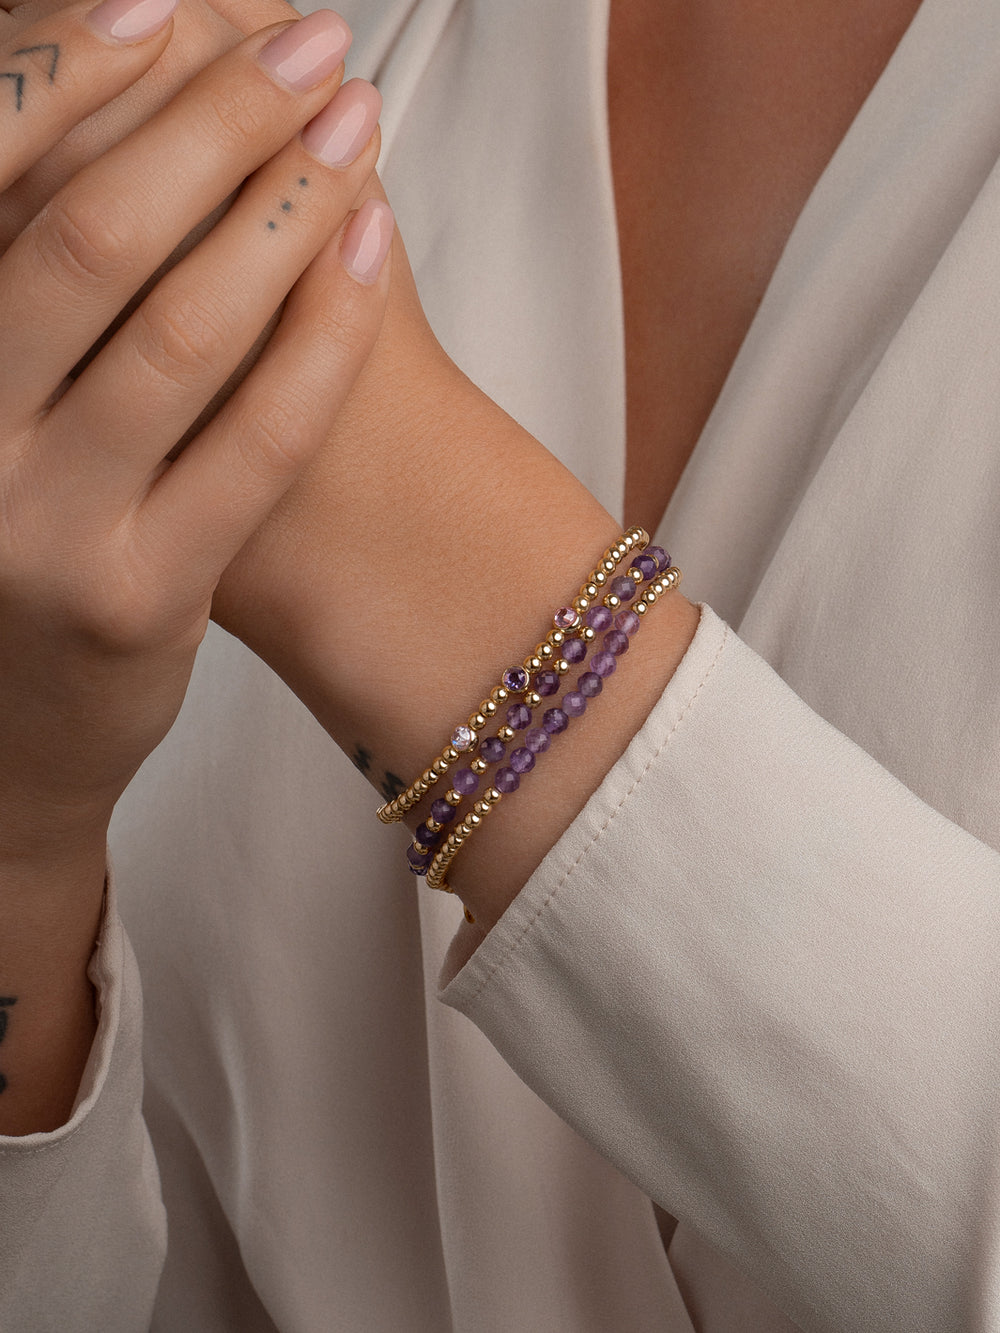 Goudkleurige elegantie: Ga voor een chique en trendy look met deze armbanden stack, waaronder de Amethyst Interstellar armband gemaakt van zilver en amethist kralen in een prachtige goudkleurige afwerking. Perfect om jouw outfit compleet te maken! #kleur_